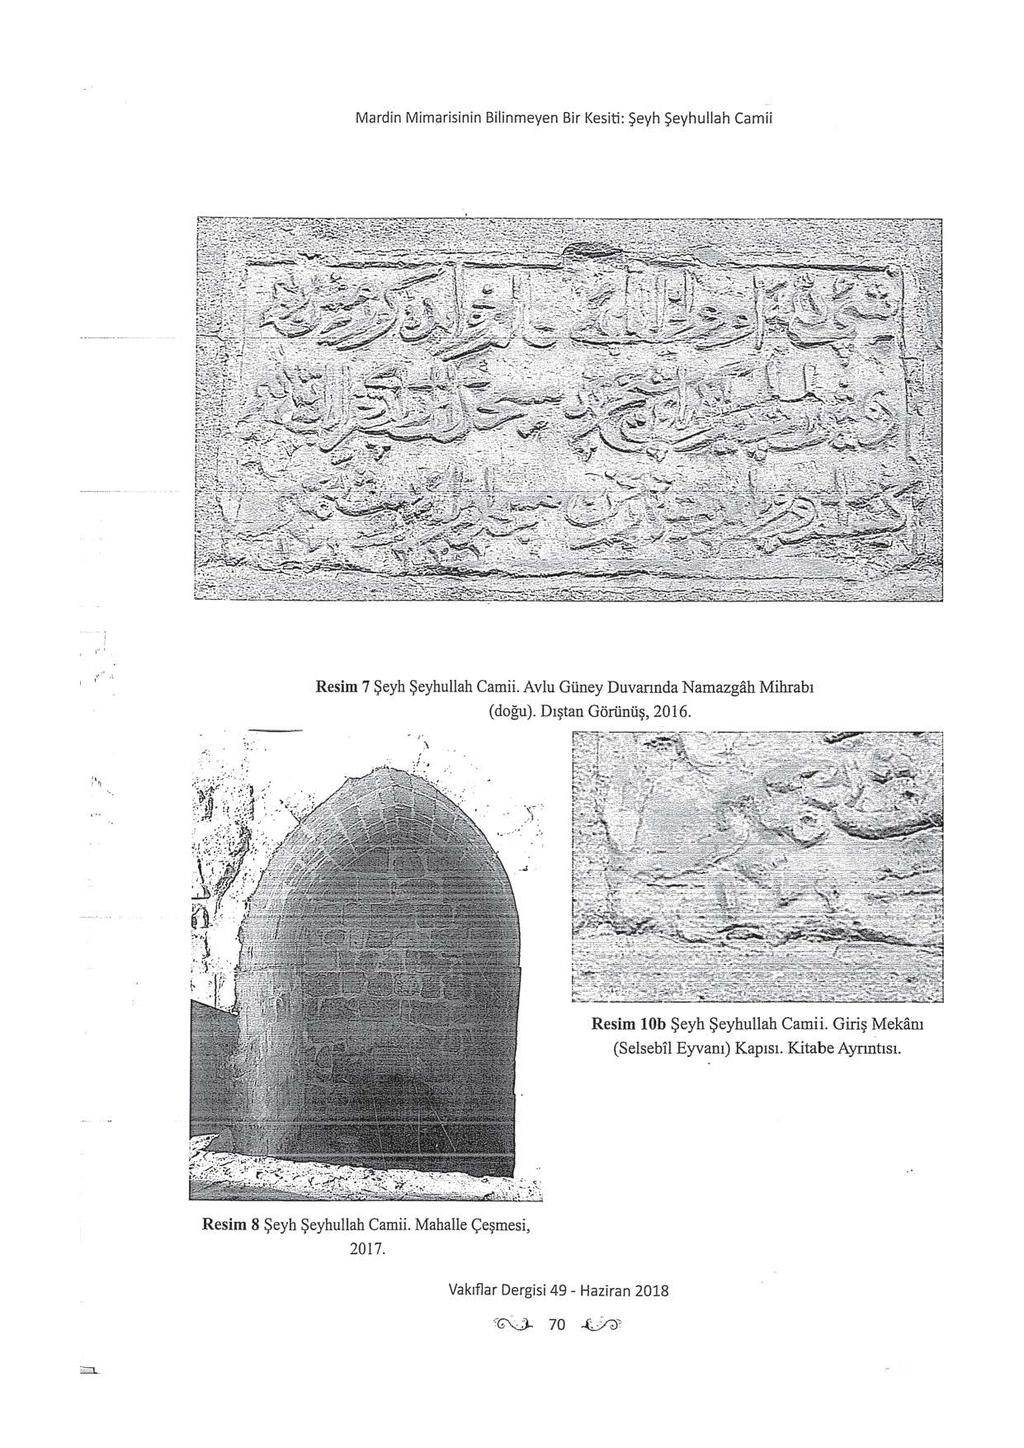 Mardin Mimarisinin Bilinmeyen Bir Kesiti : Şeyh Şeyhullah Camii r' ' Resim 7 Şeyh Şeybullah Camii. Avlu Güney Duvarında Namazgah Mihrabı (doğu).